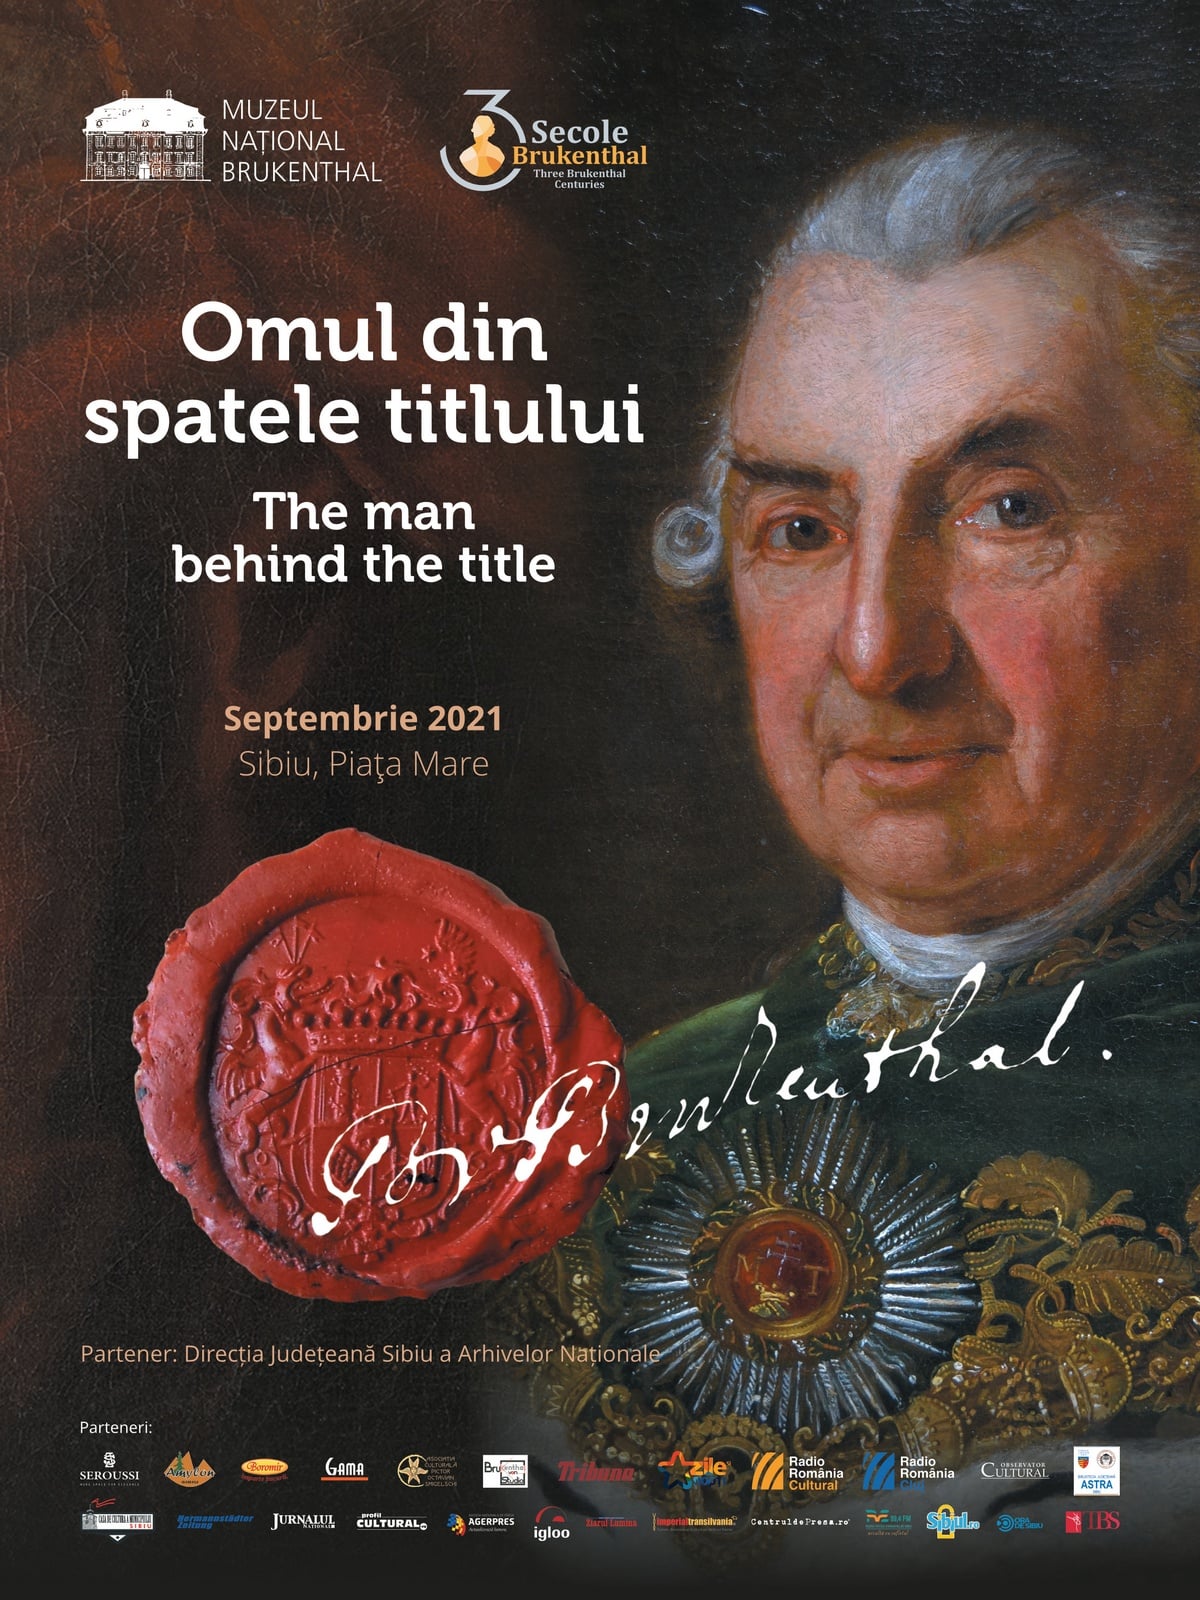 Samuel von Brukenthal – the man behind the title